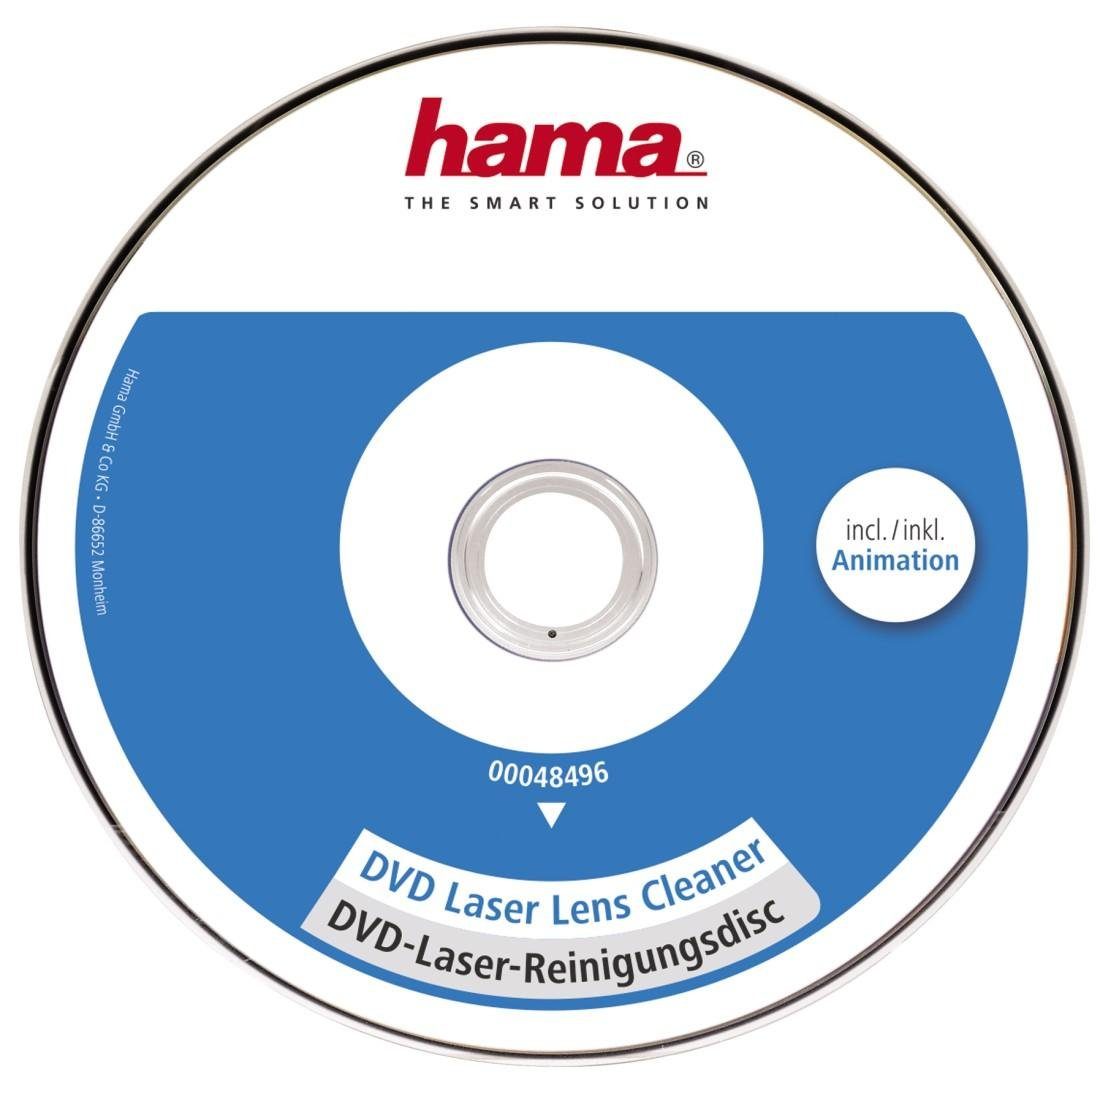 Hama Reinigungs-CD DVD-Laserreinigungsdisc